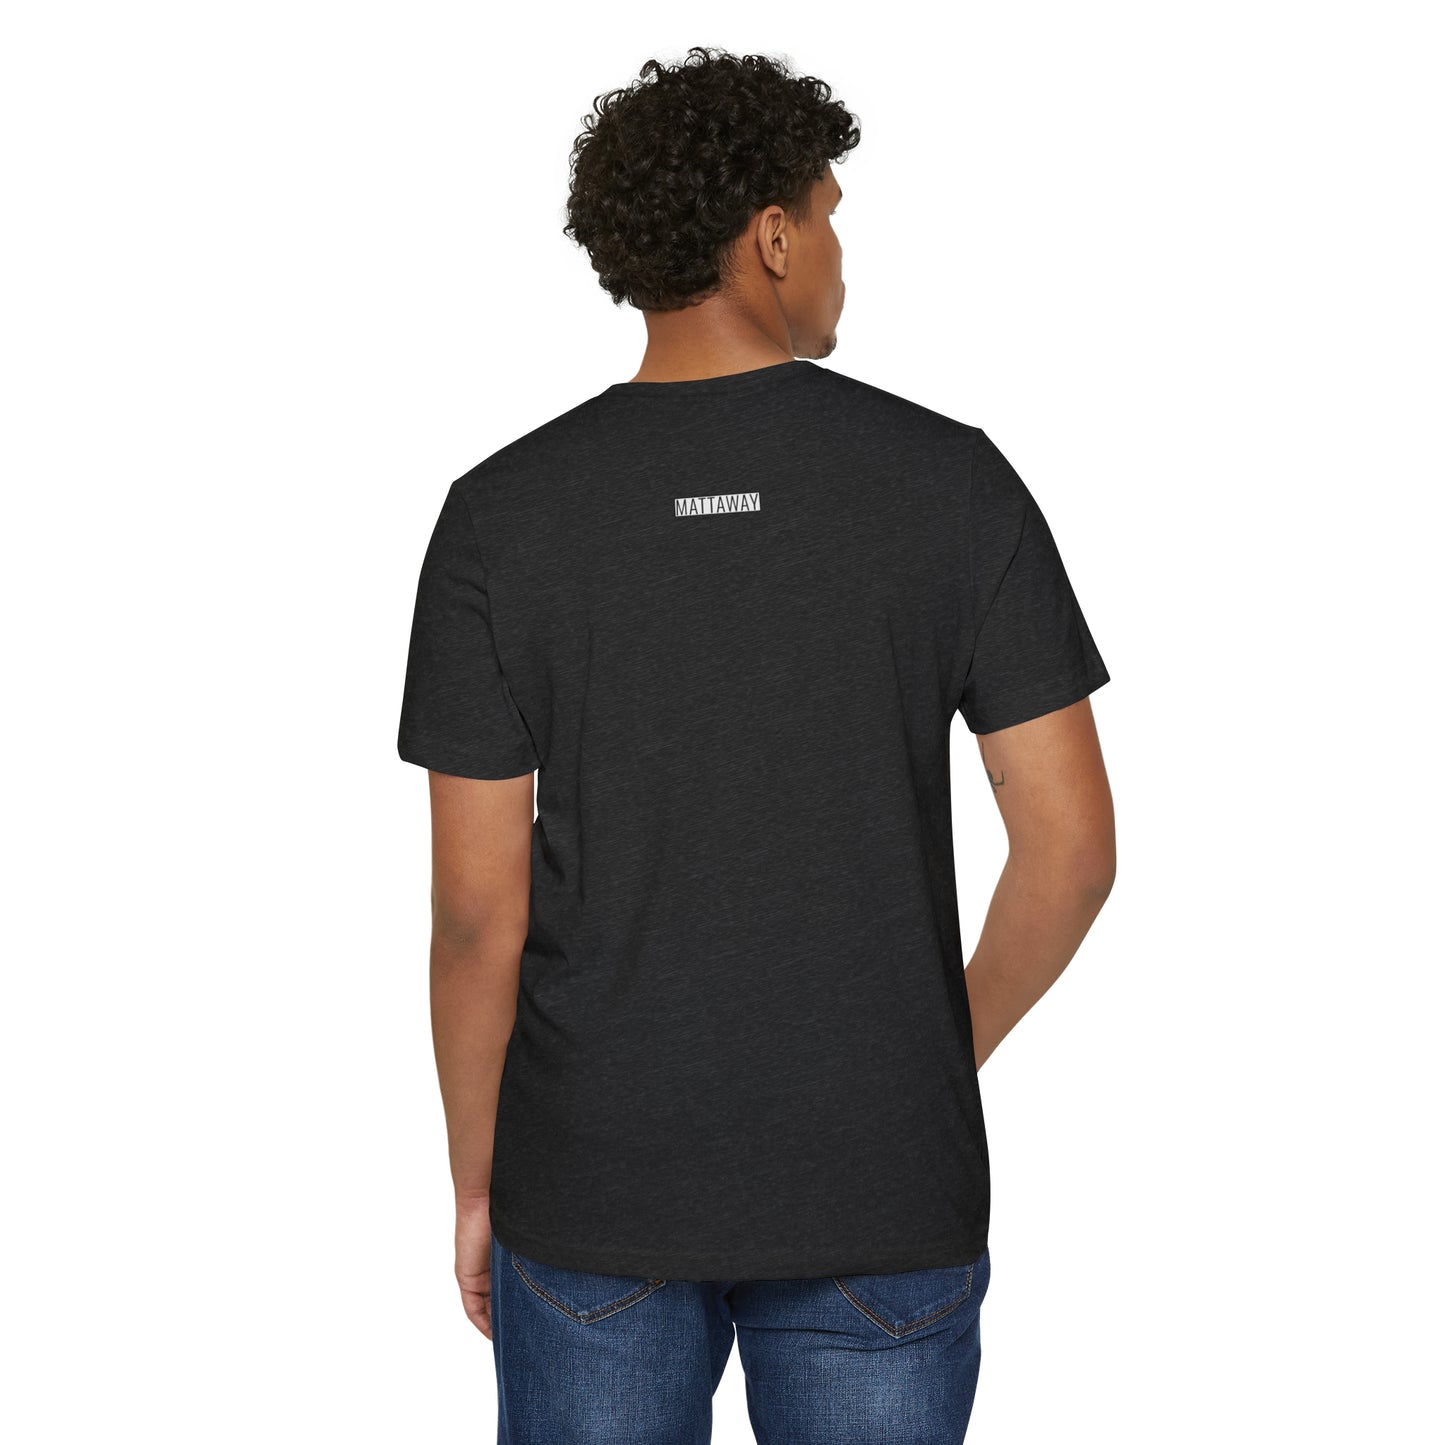 MINIMAL SHAPE 105 - Camiseta ecológica reciclada unisex